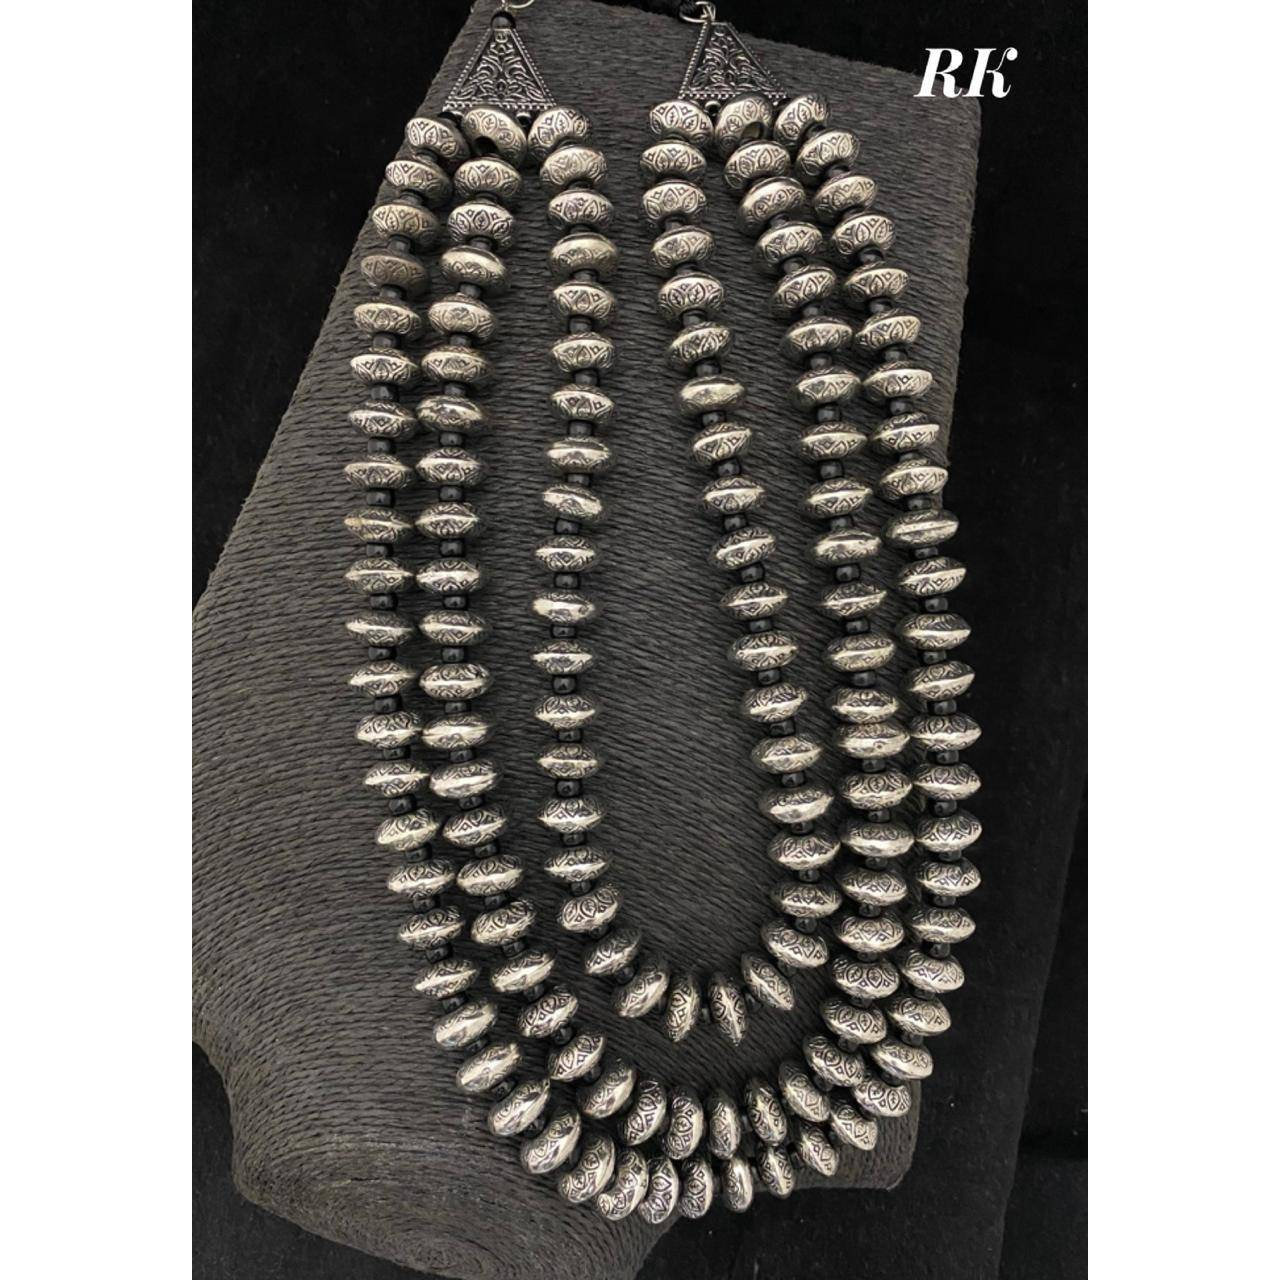 Multi Layer Oxidized Necklace | Indian Ethnic Jewelry | Oxidized Jewelry, statement jewellery, silver black jewellery, boho tribal jewelry